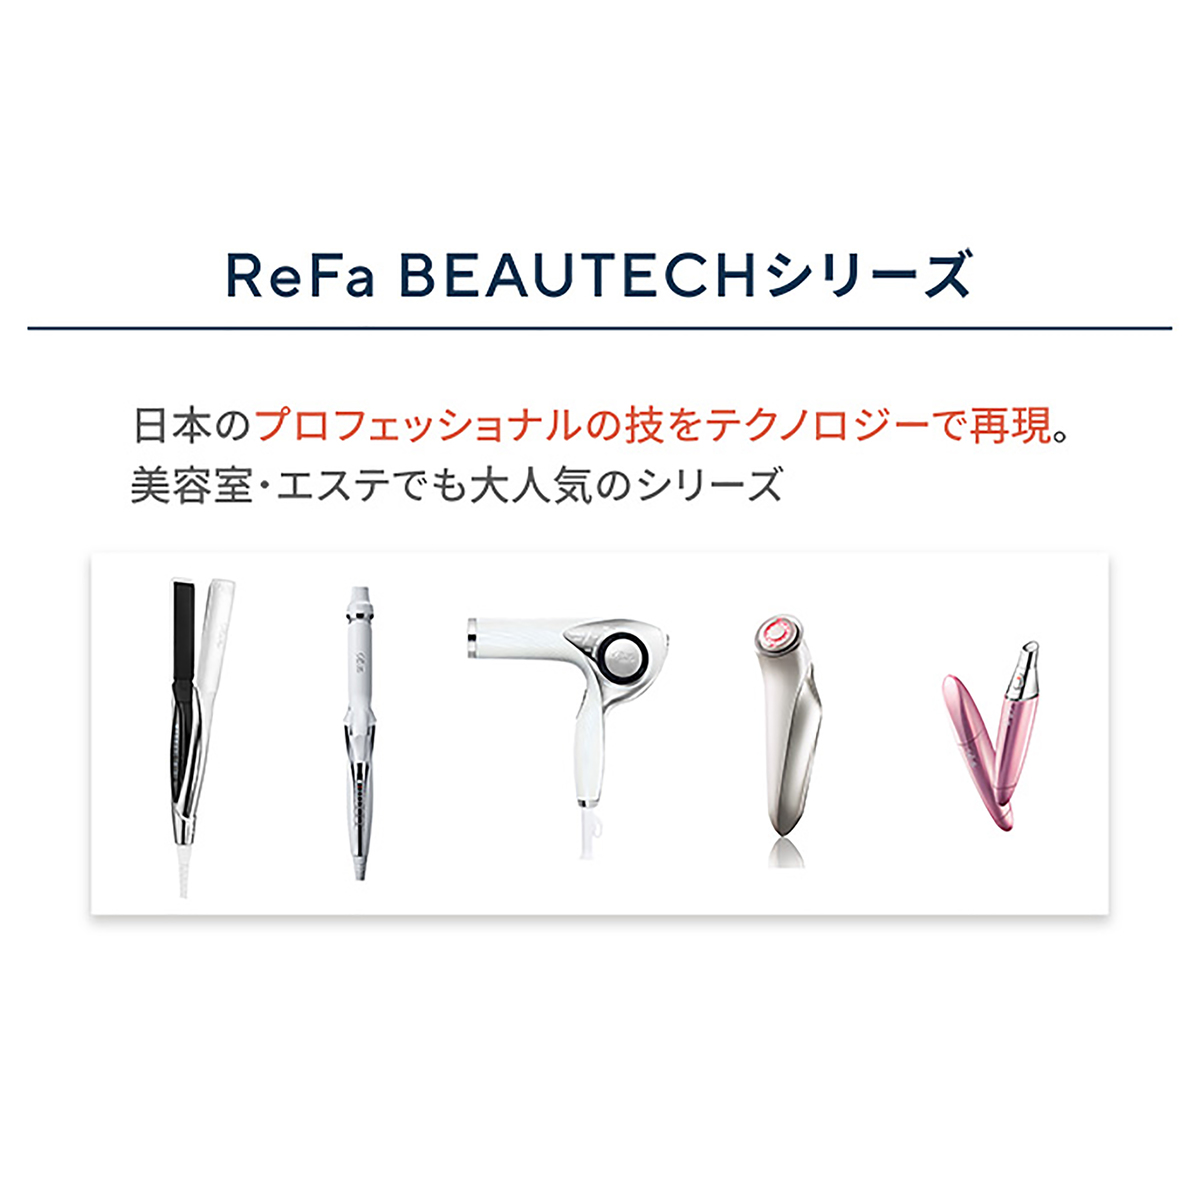 ReFa BEAUTECH ストレートアイロン - QVC.jp